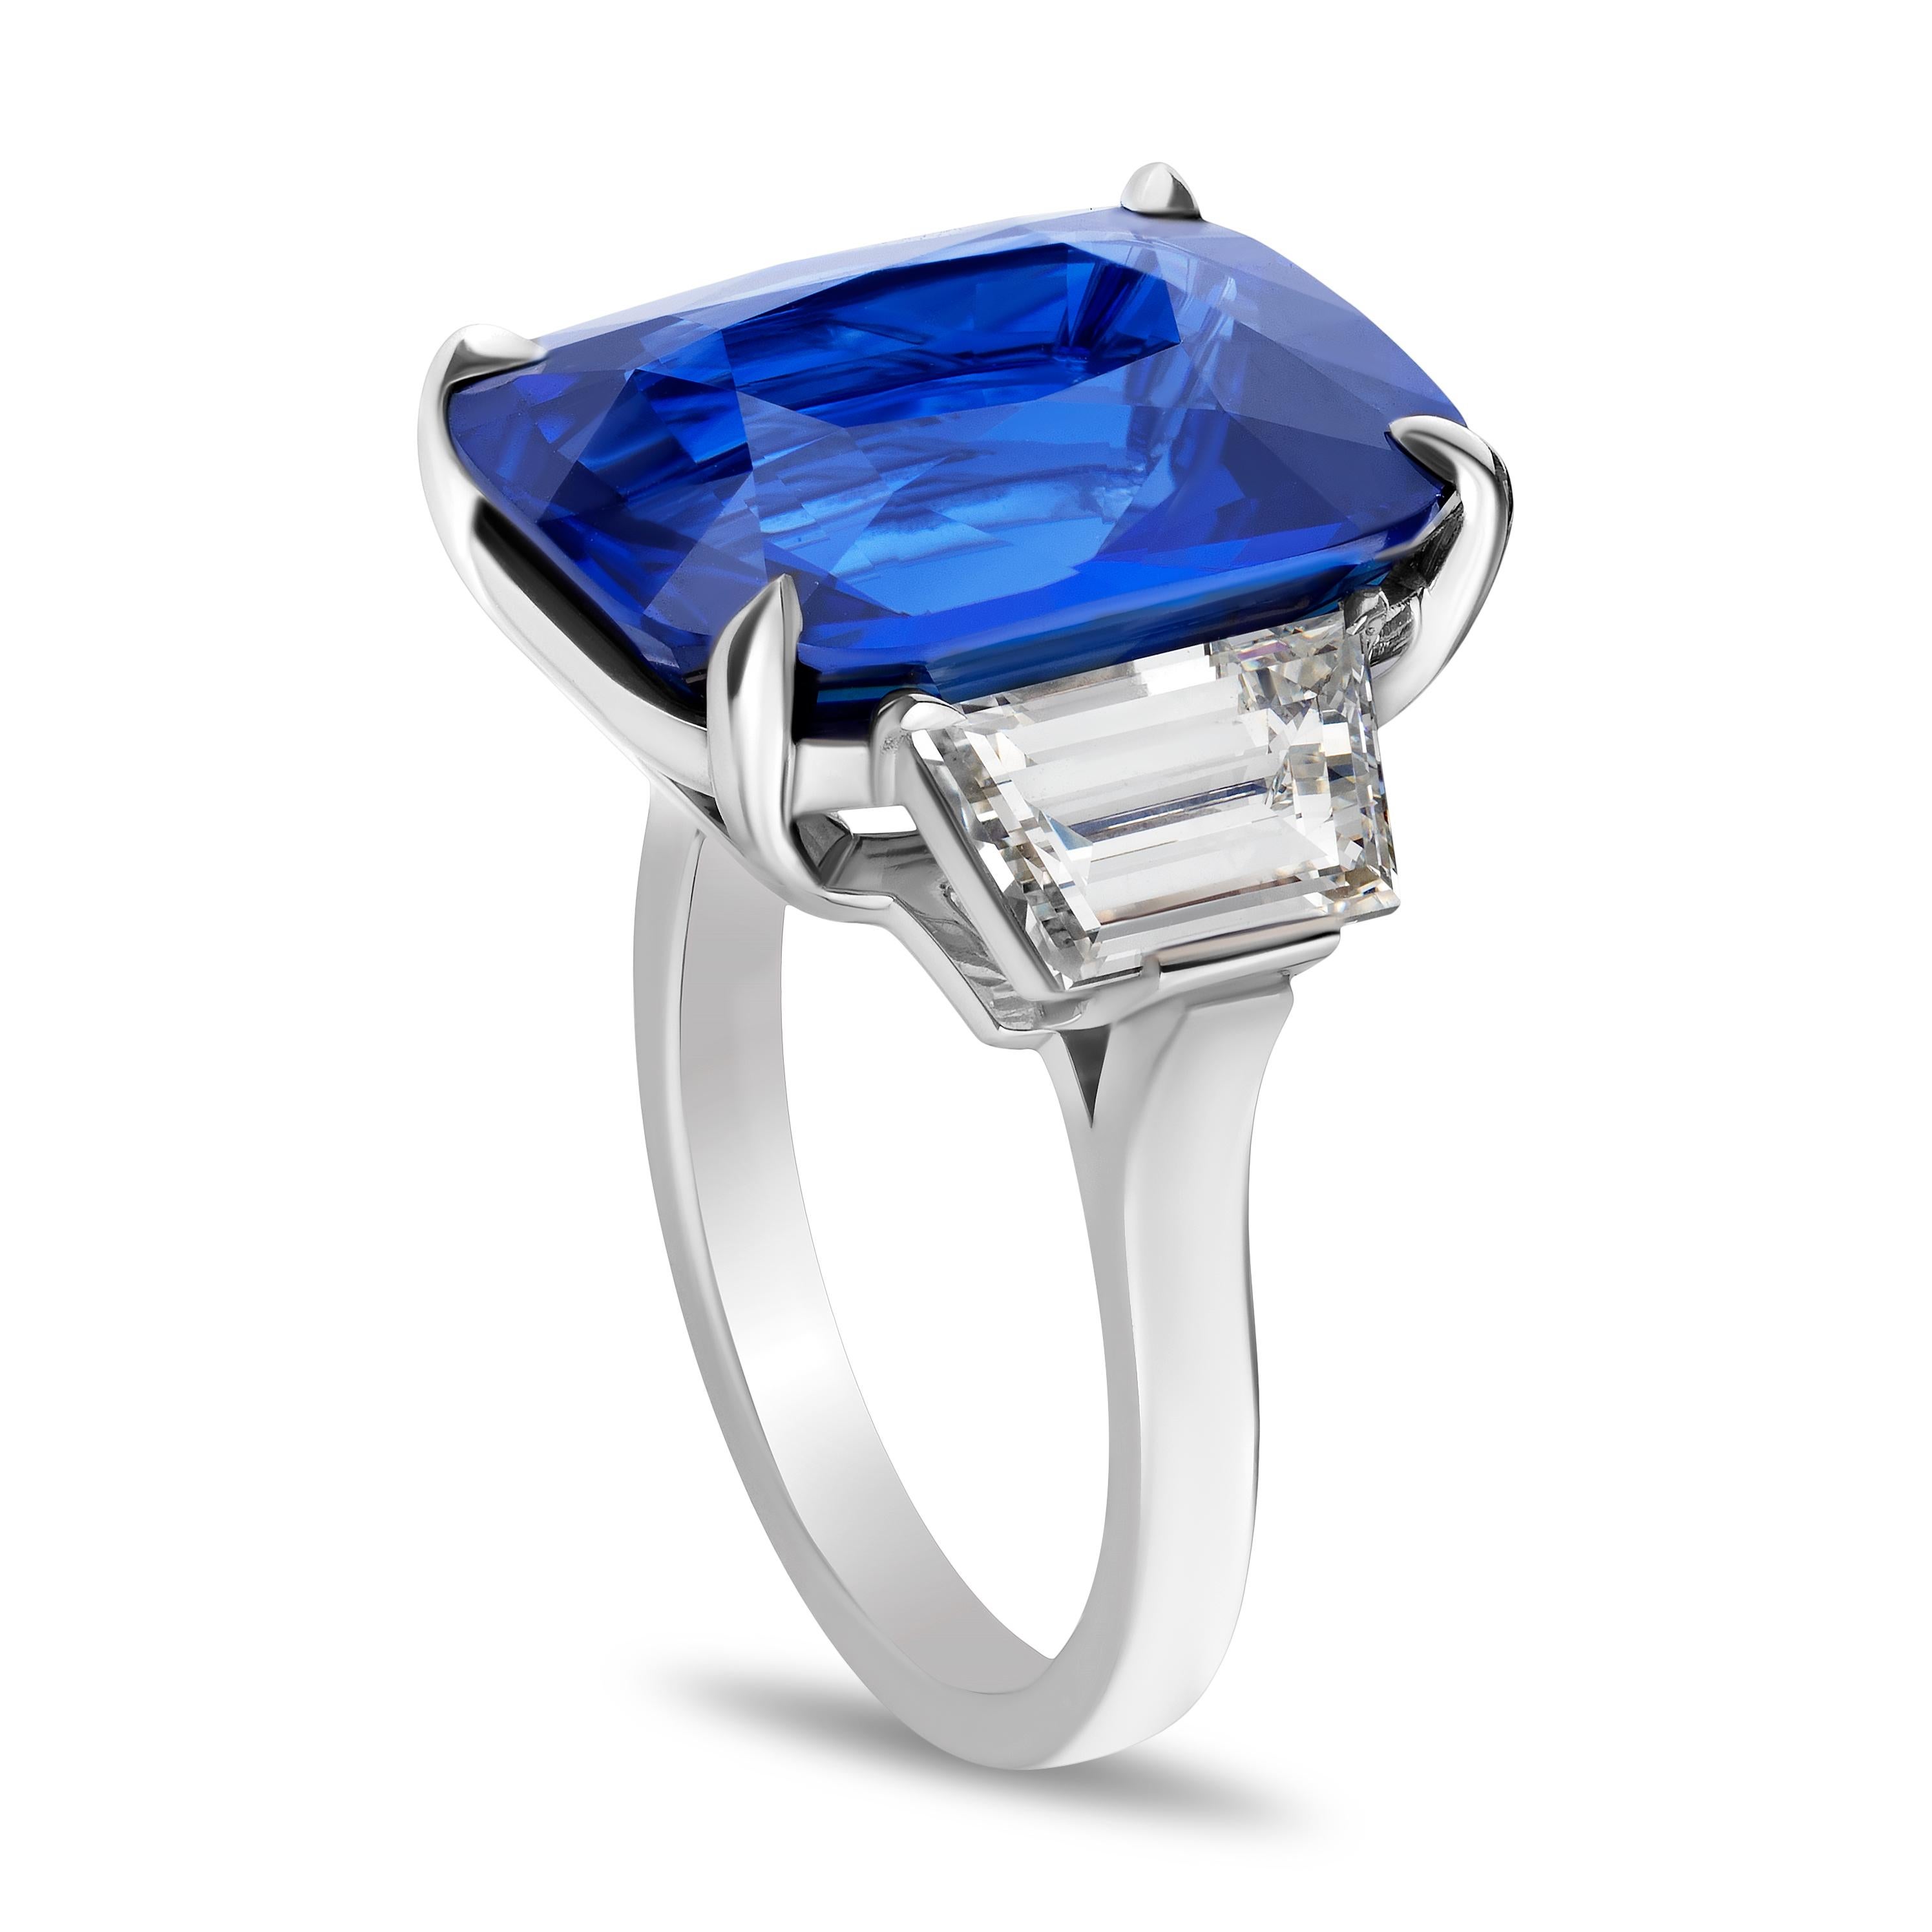 Bague en platine réalisée à la main ornée d'un saphir bleu coussin de 16,01 carats et de deux diamants trapèzes de 2,79 carats taillés en gradins